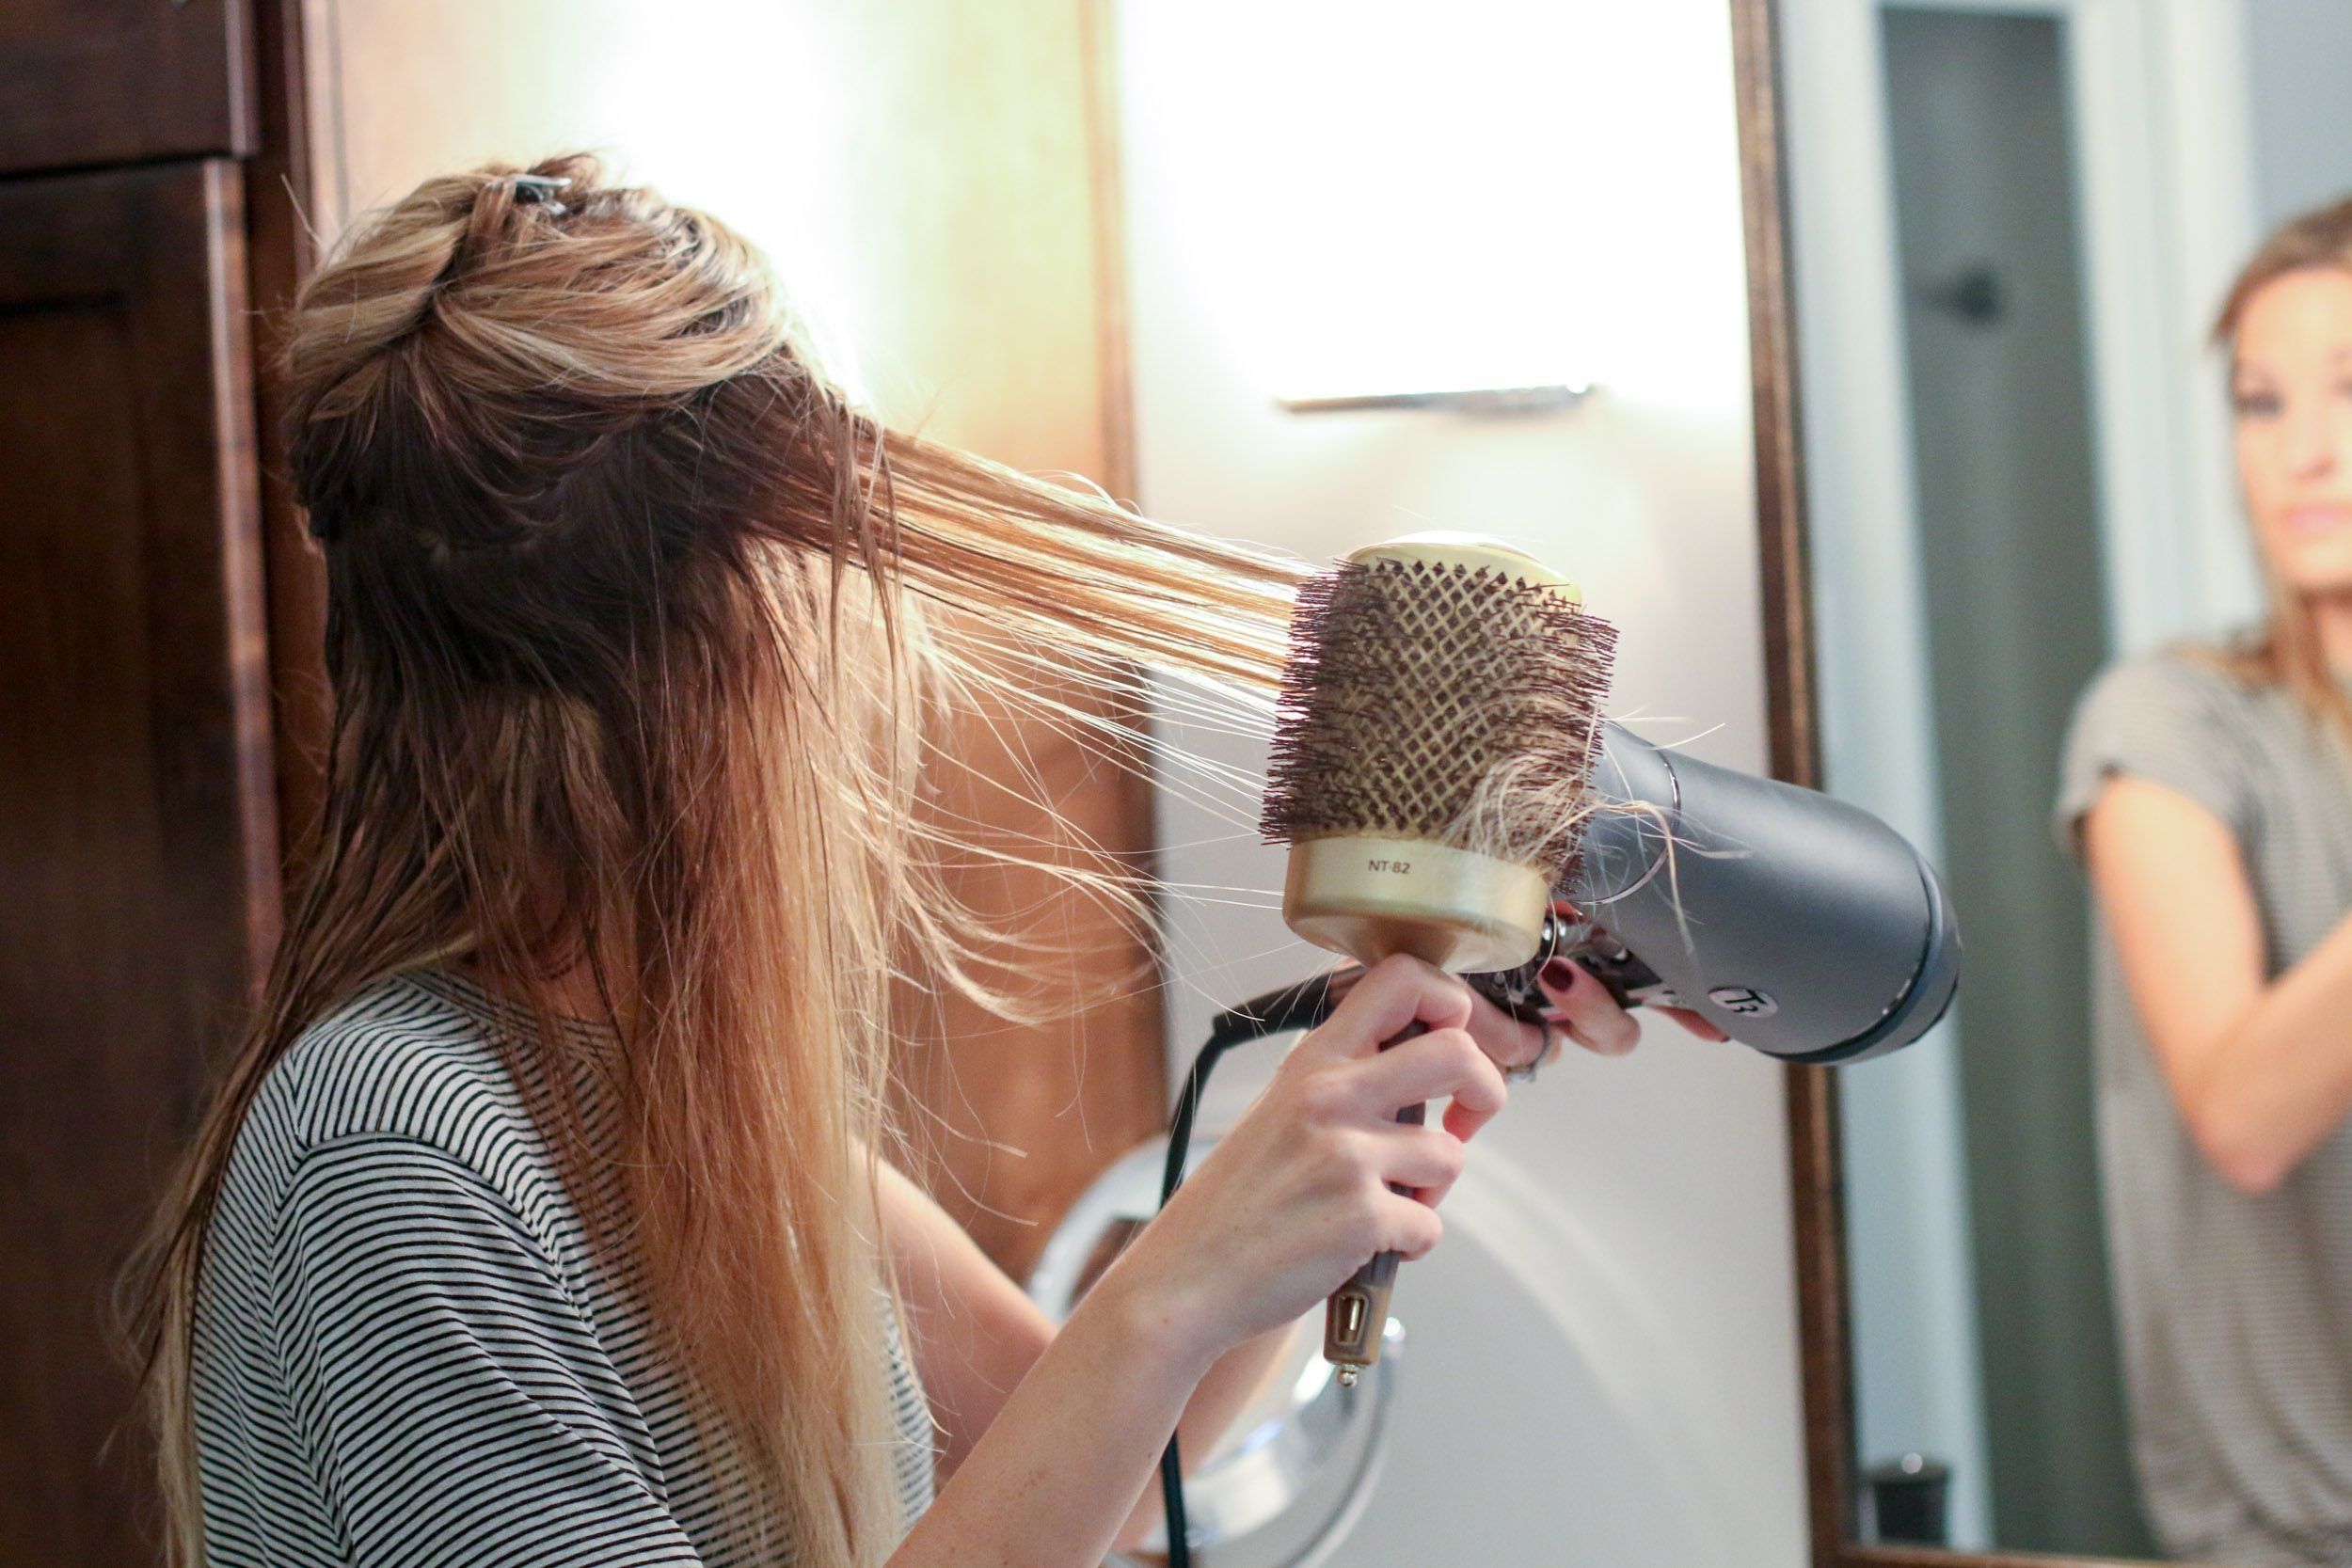 Kajian semula pengering rambut Panasonic terbaik pada tahun 2020